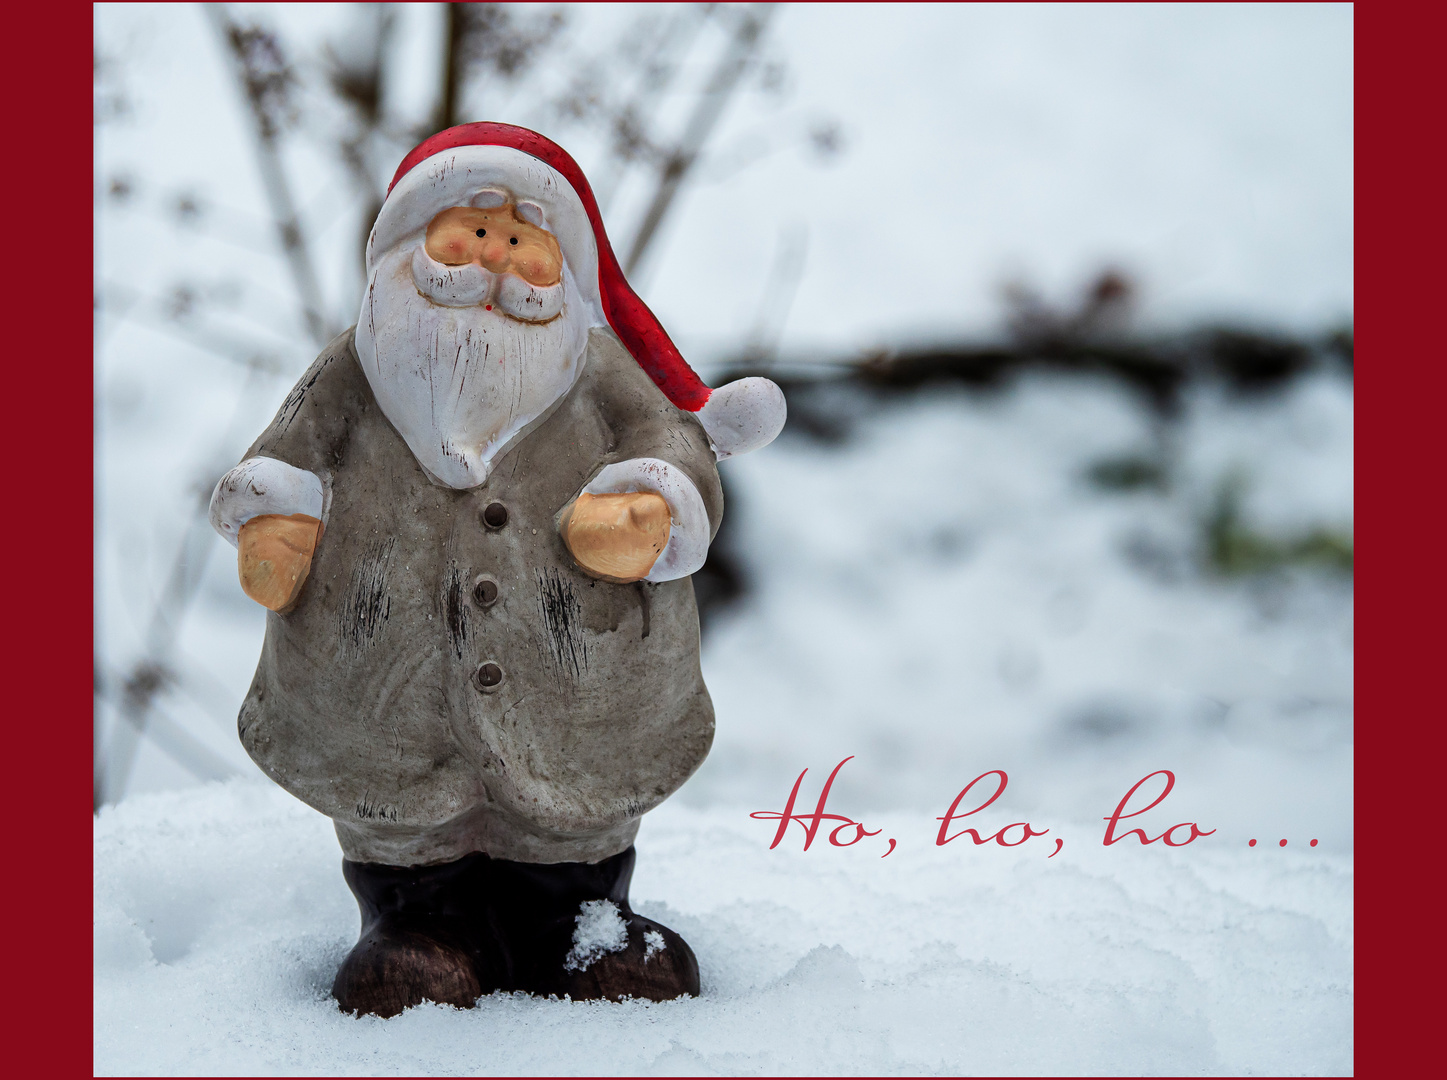 Ho, ho, ho ...